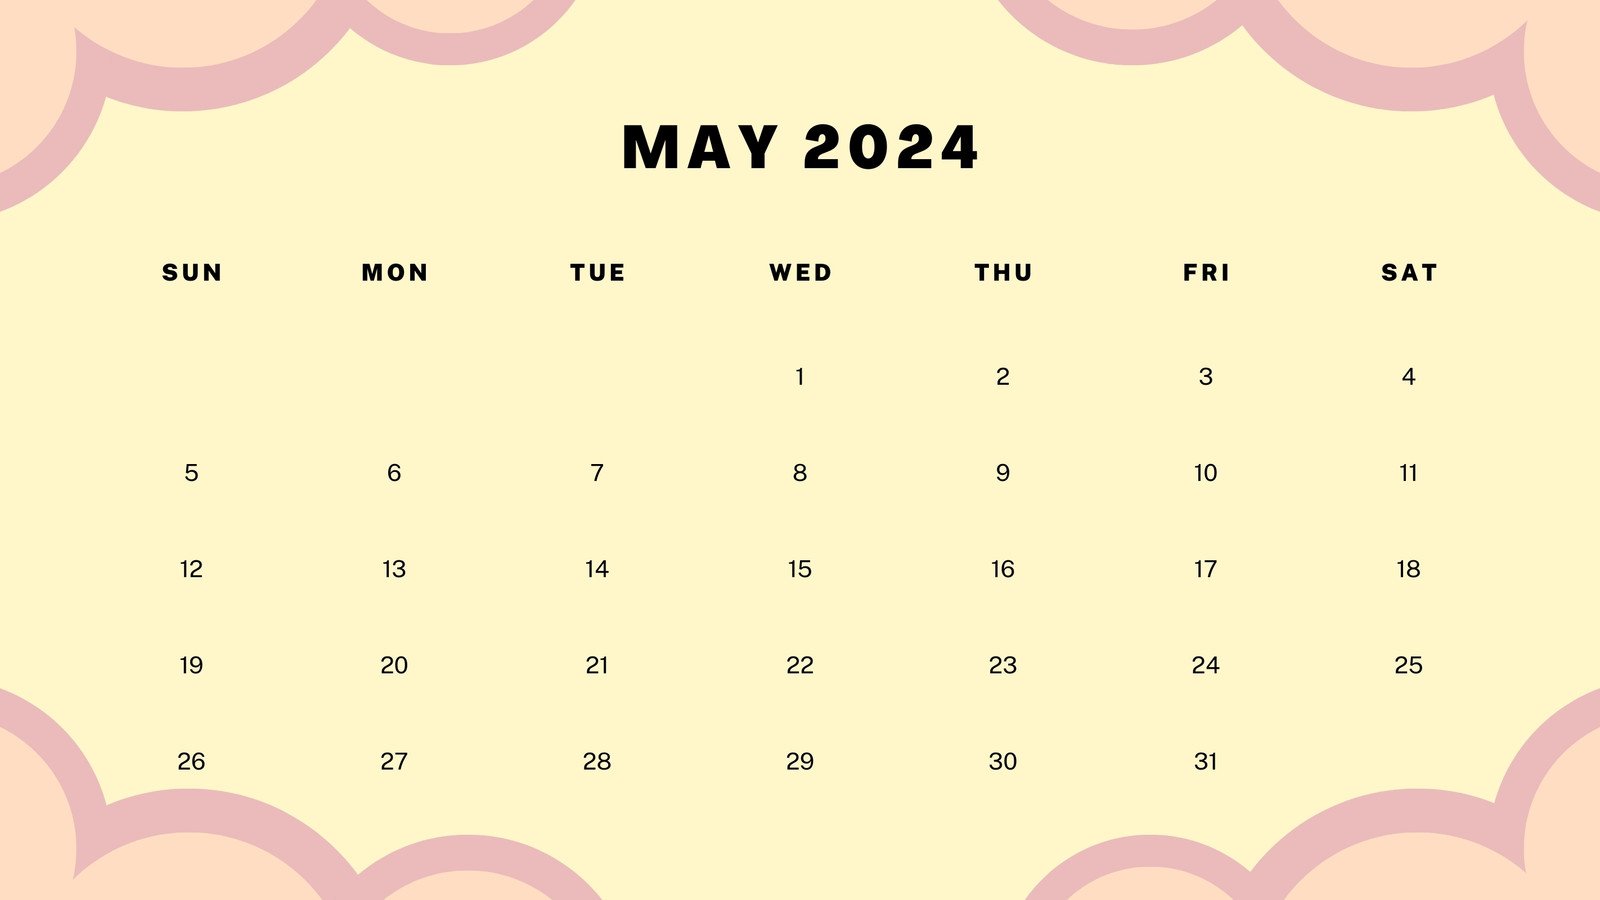 May 2024 calendar